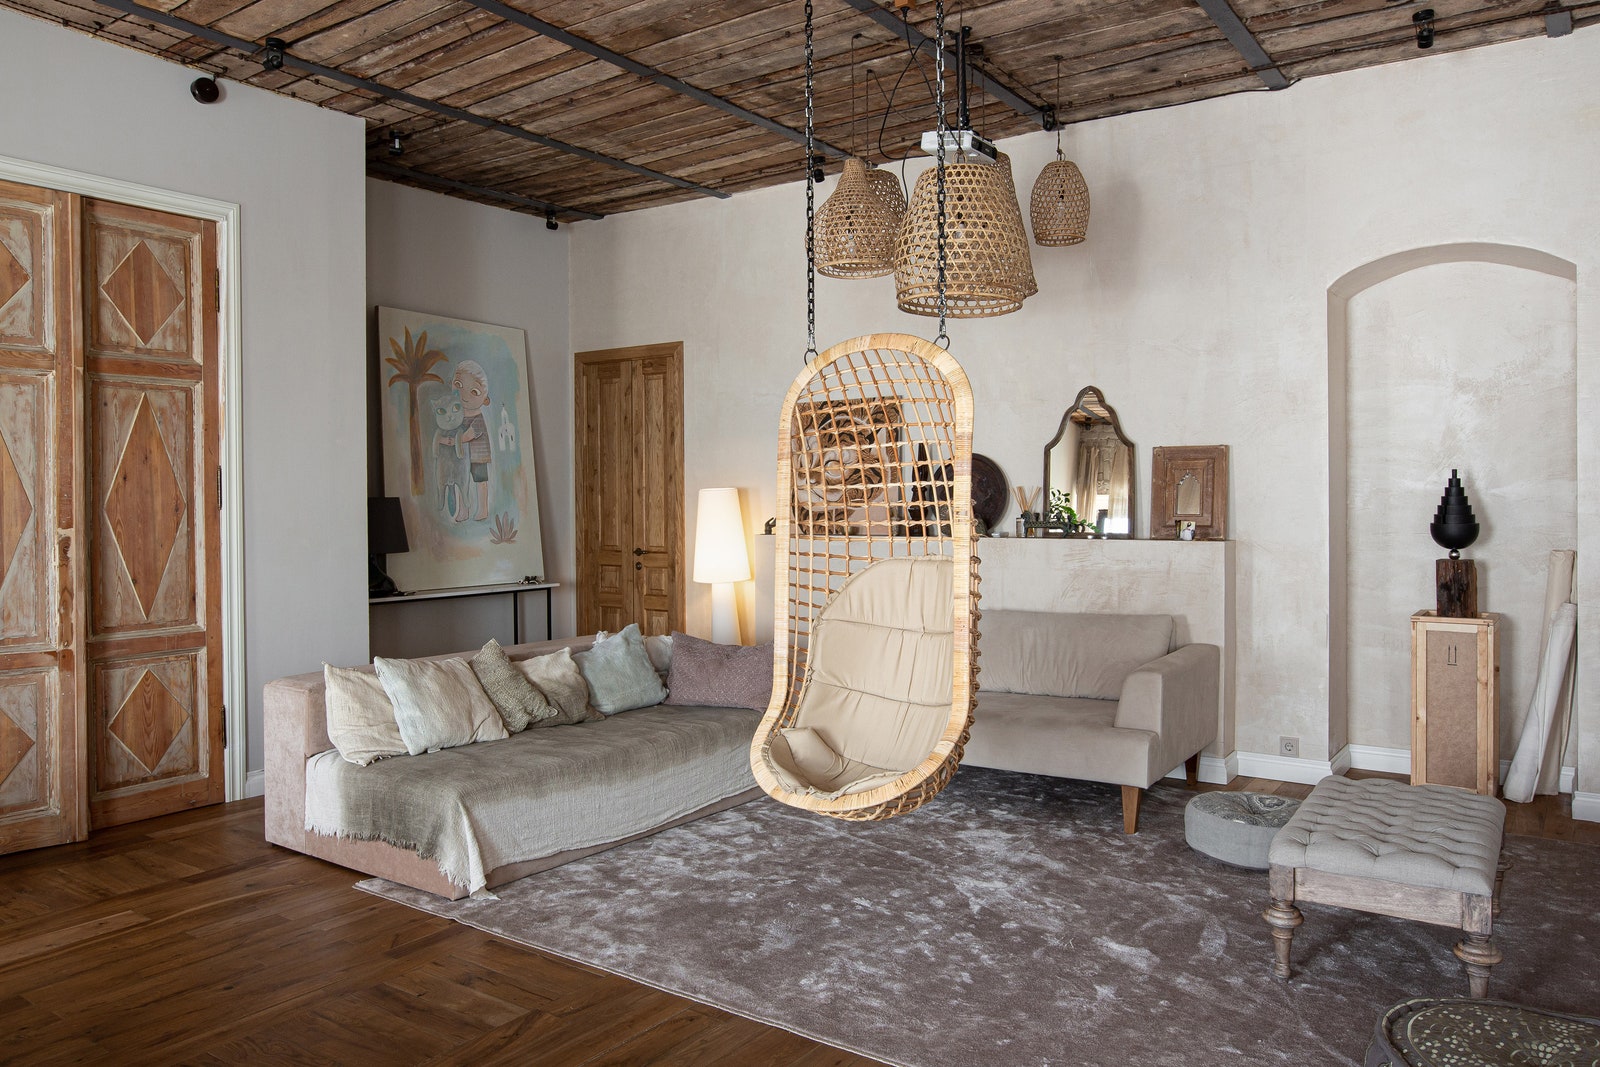 Мягкая мебель в гостиной сделана на заказ по дизайну Элины Гордеевой. Светильники когдато были корзинами для петухов.